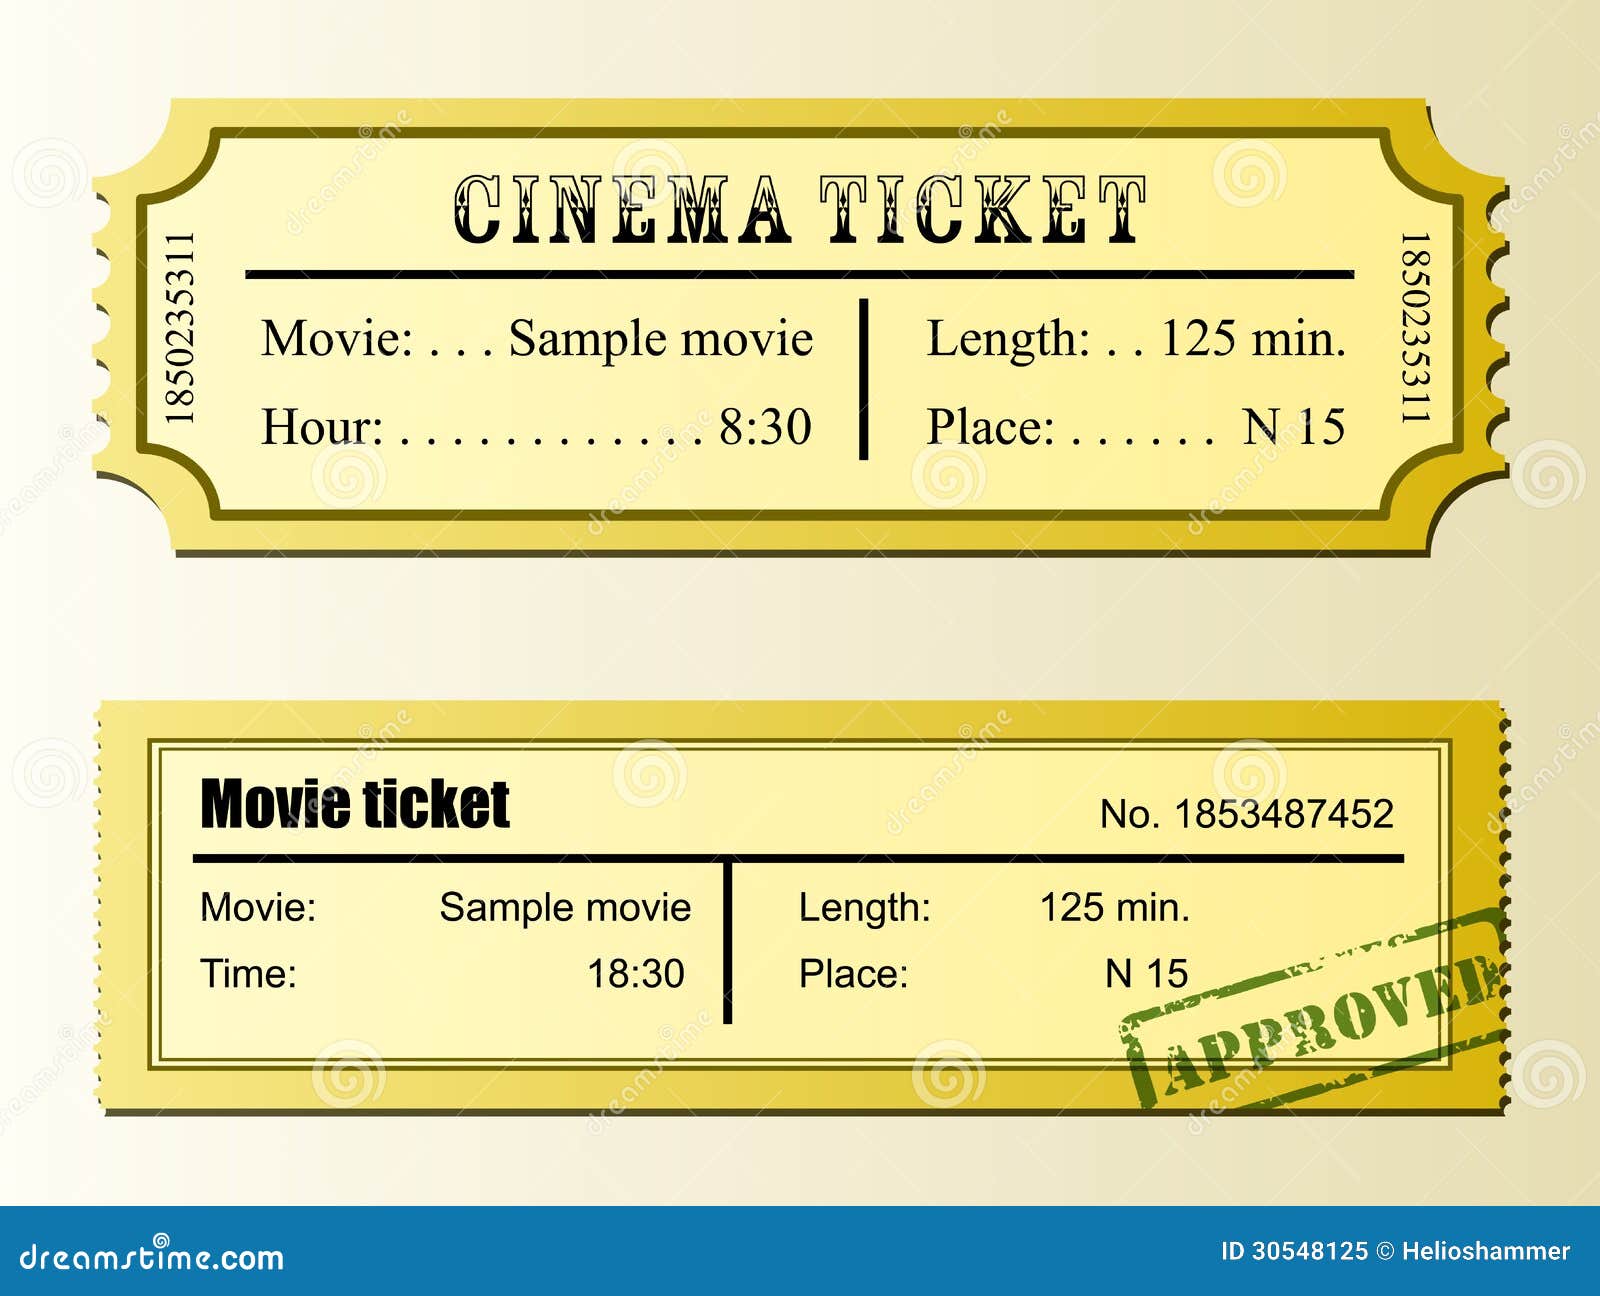 Performance ticket. Билет в кинотеатр шаблон. Cinema ticket. Желтый билет.